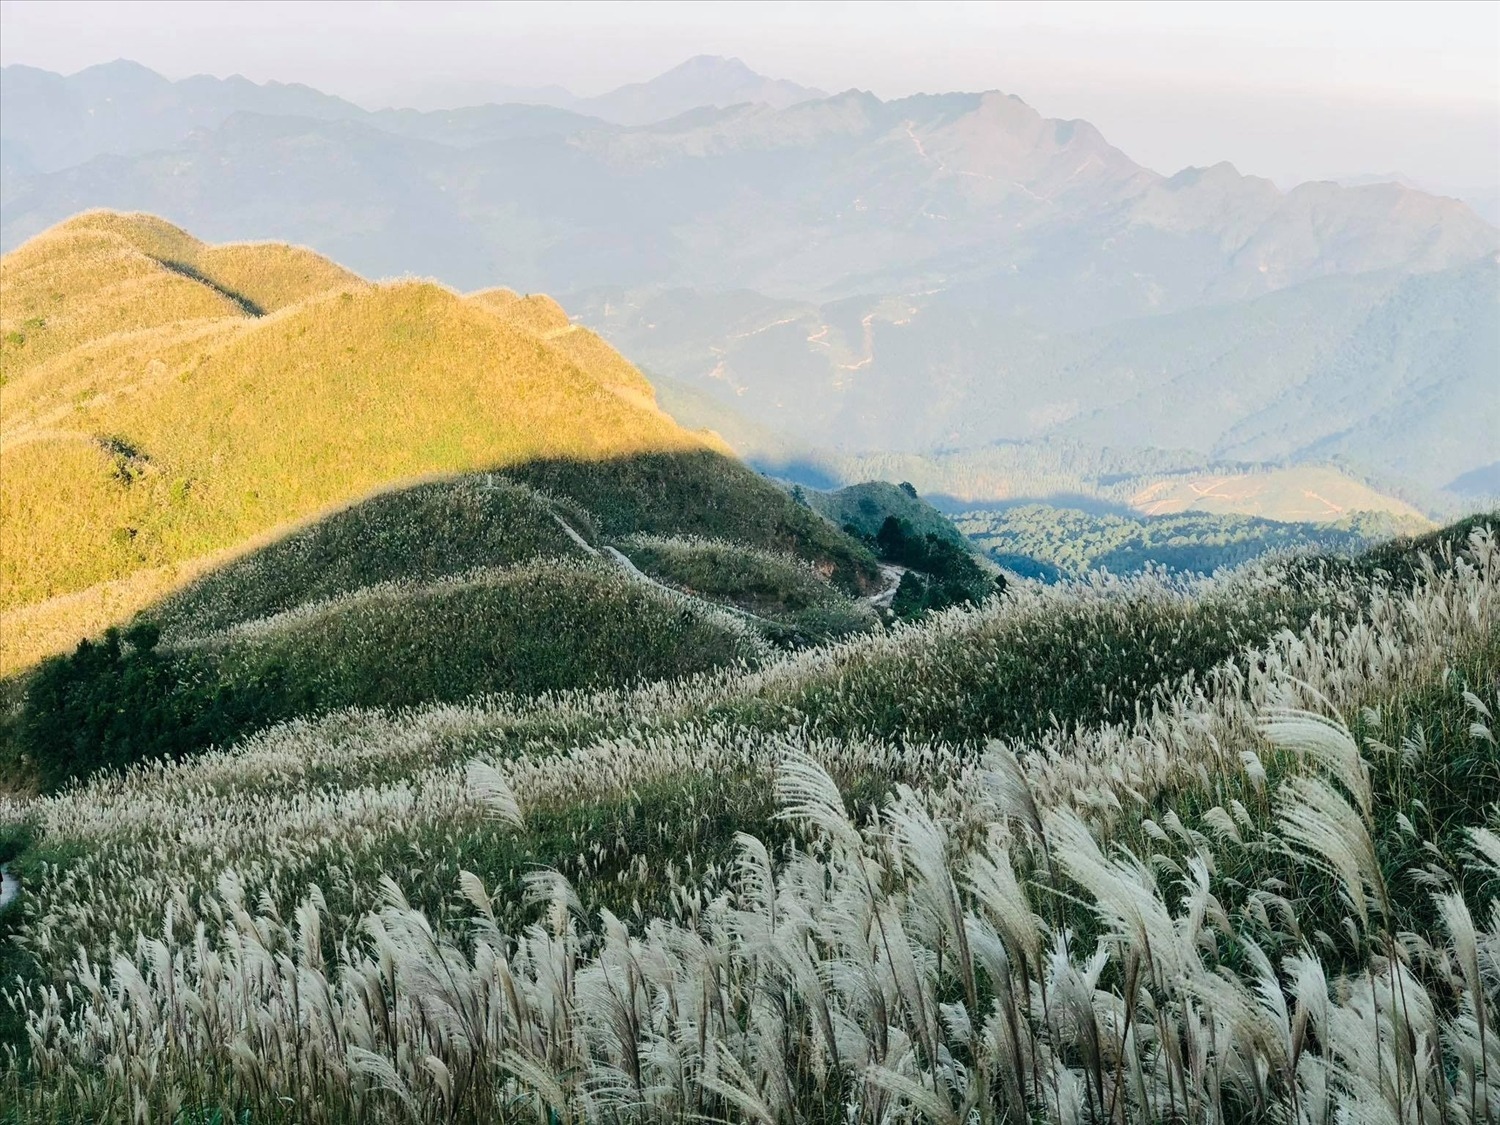 Khám phá Bình Liêu - “Sapa thu nhỏ” với loạt địa điểm hoang sơ đẹp choáng ngợp giữa lòng Quảng Ninh - ảnh 18